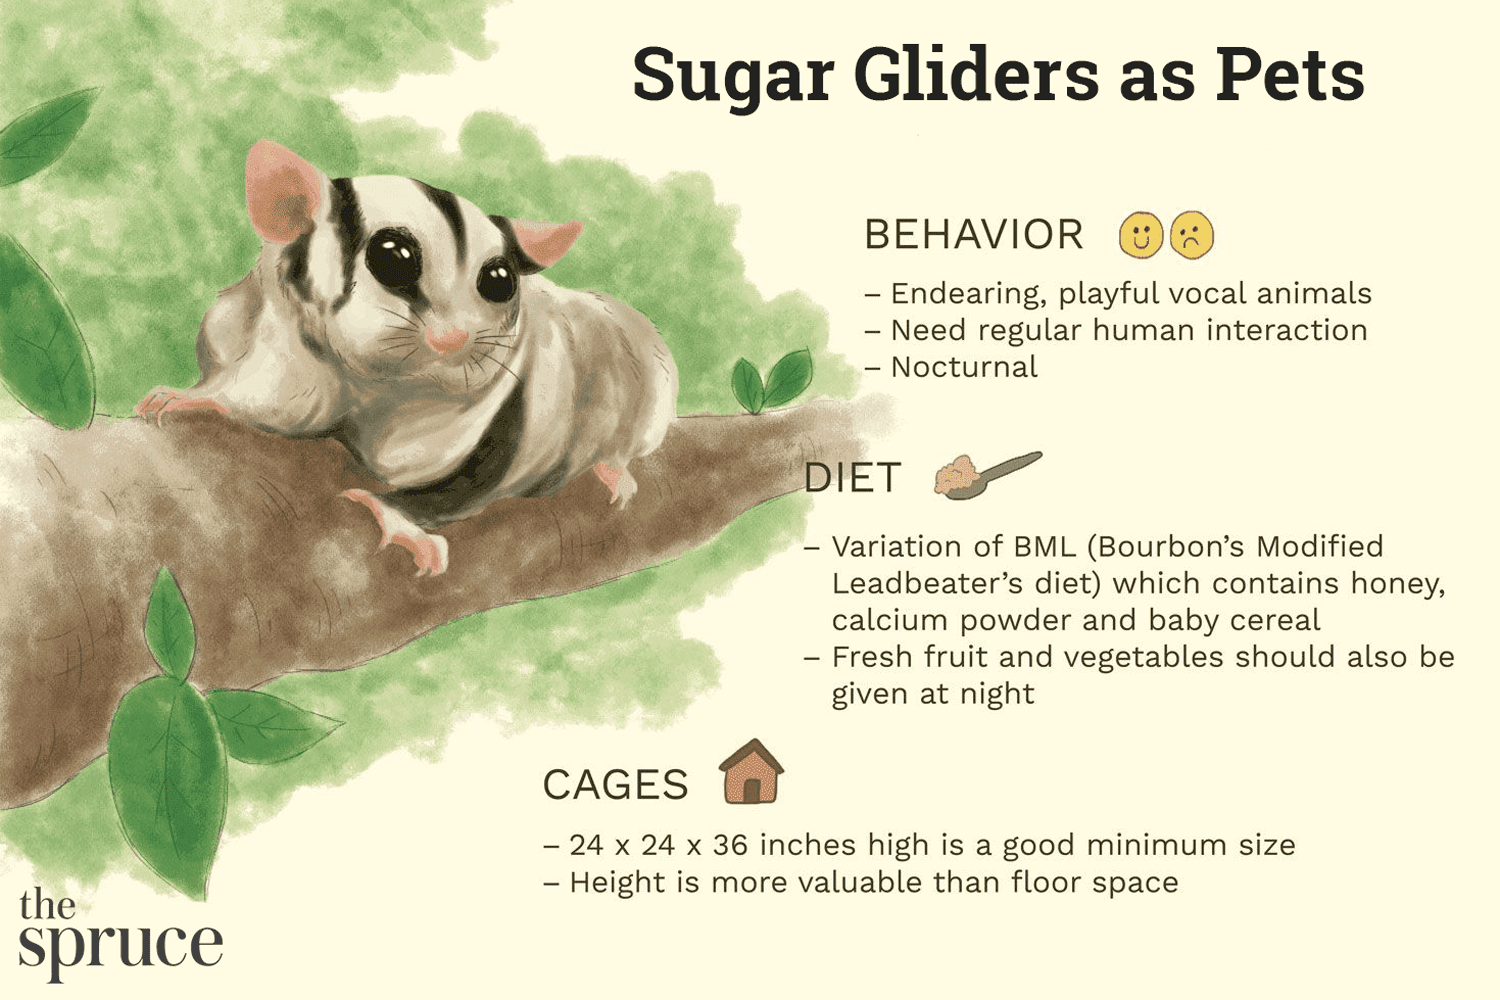 Měli byste si Sugar Glider chovat jako domácího mazlíčka?